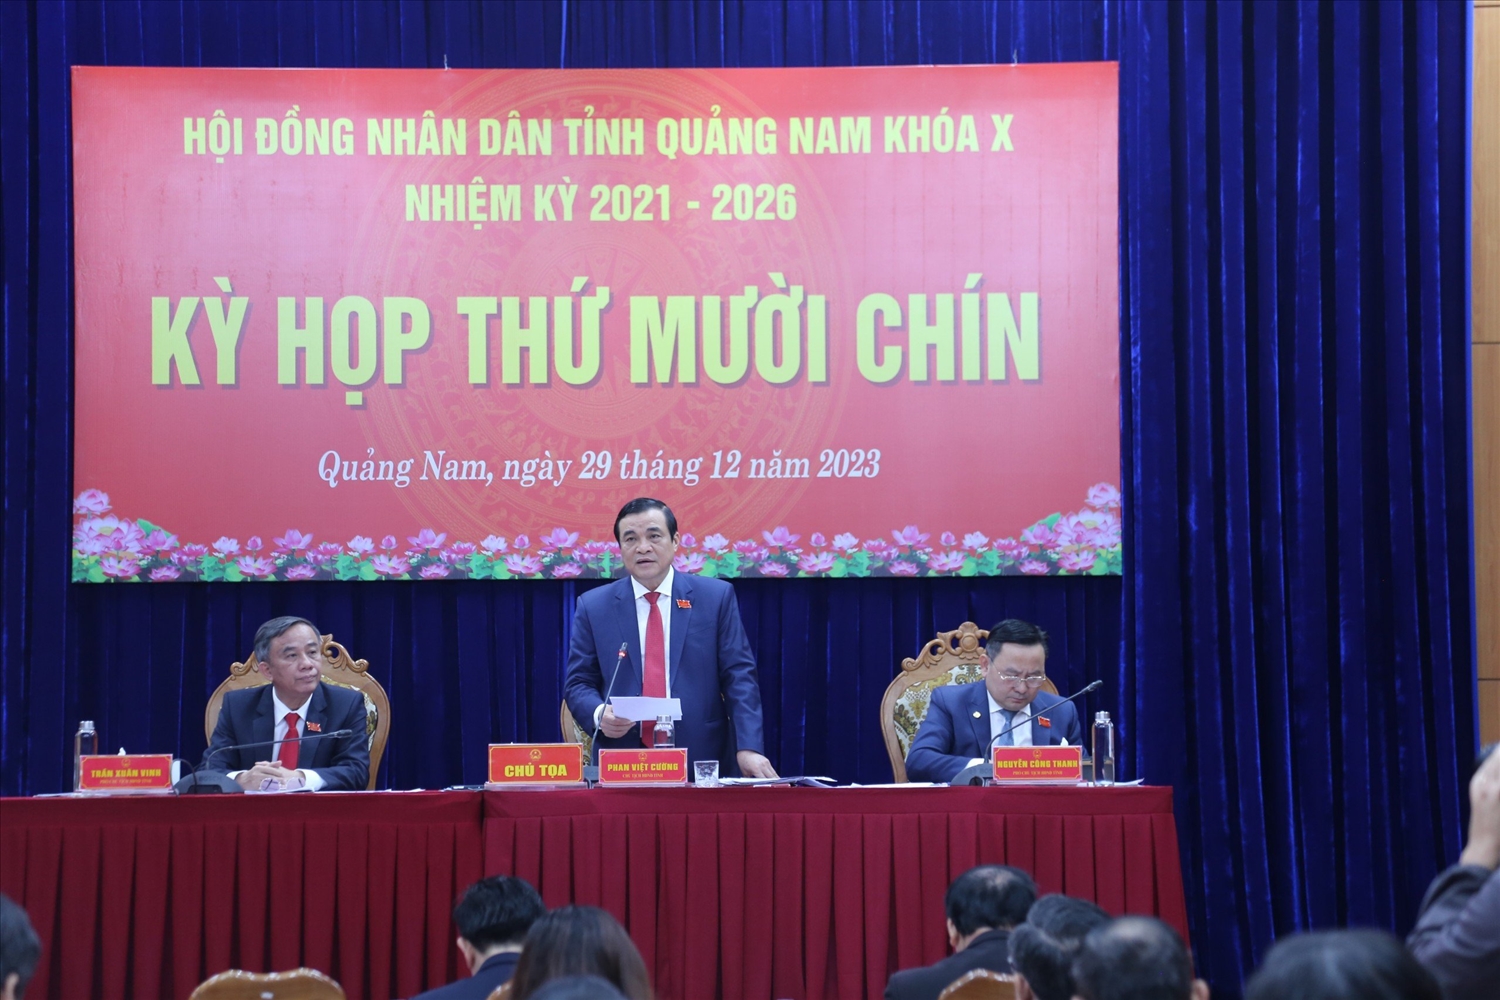 Ông Phan Việt Cường, Bí thư Tỉnh uỷ Quảng Nam phát biểu tại kỳ họp